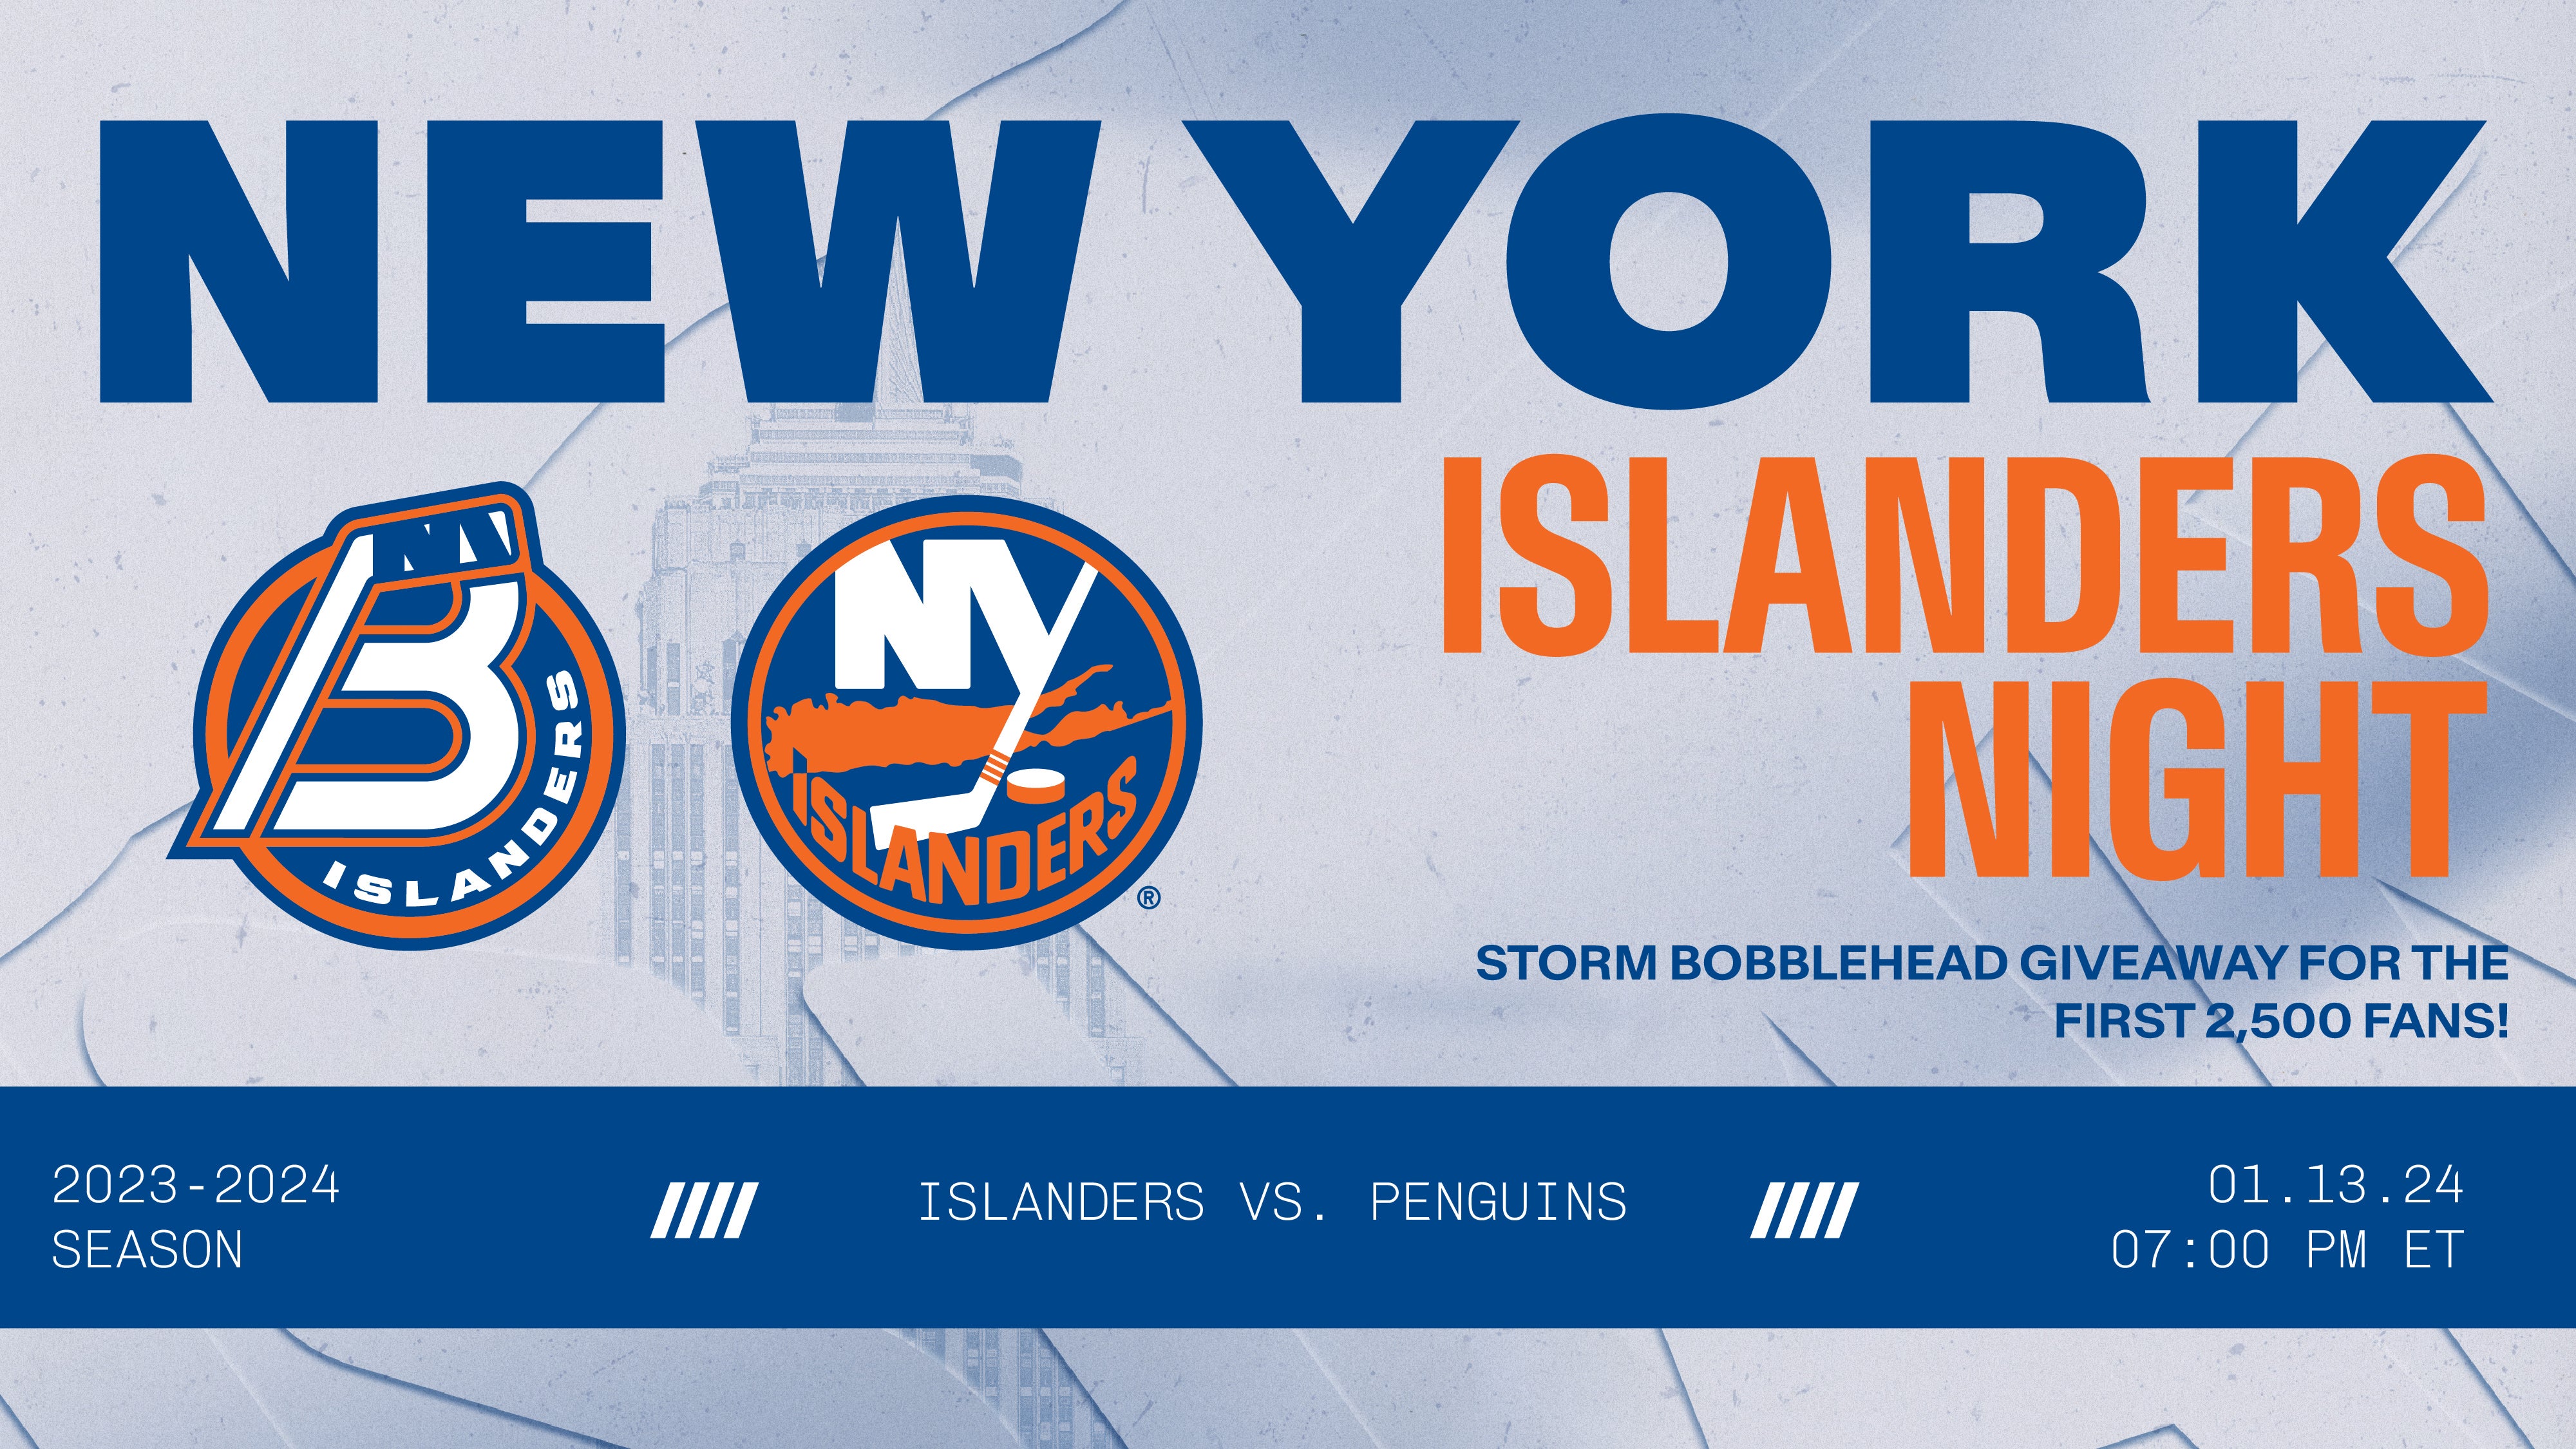 New York Islanders Tickets, 2023-2024 NHL Tickets & Schedule